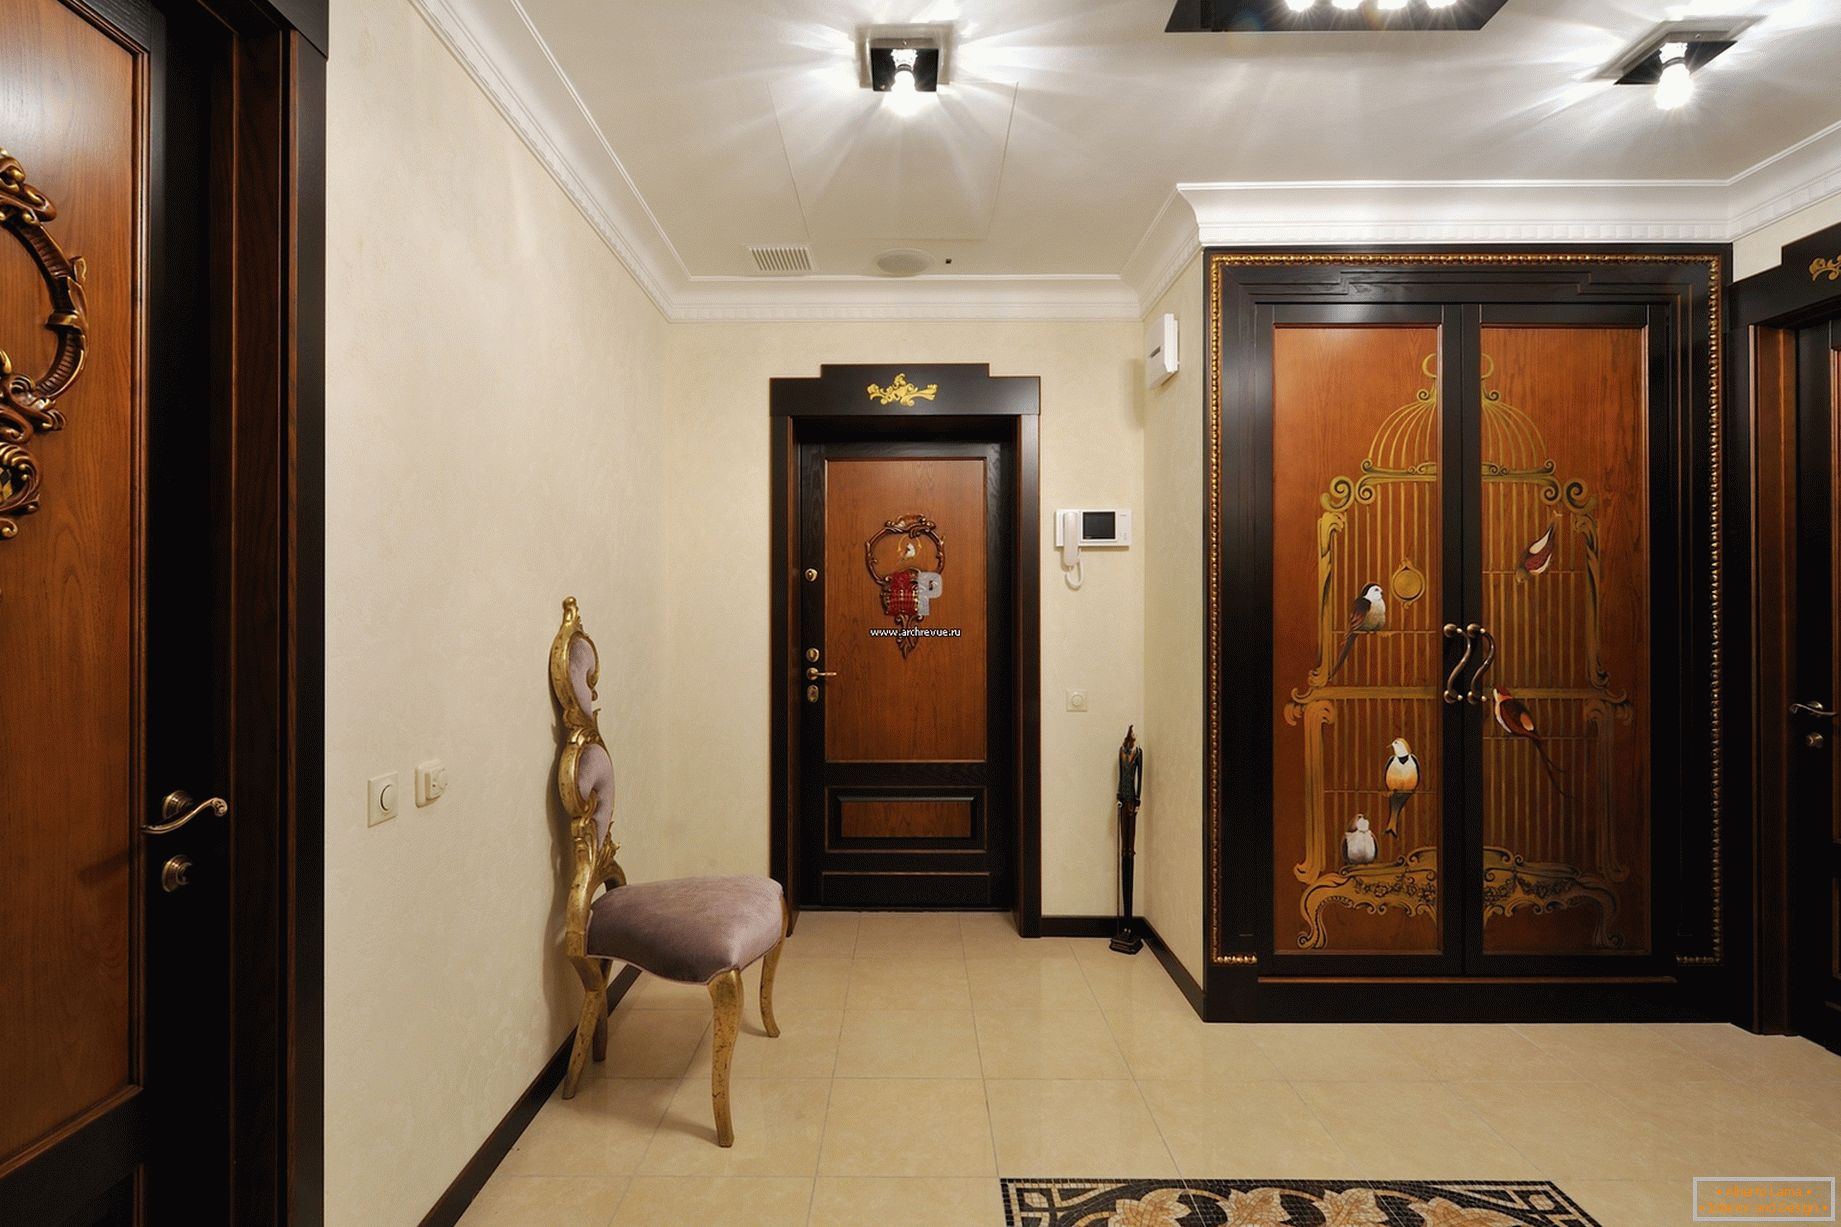 Primer pravilne izbire razsvetljave za hodnik v baročnem slogu. 